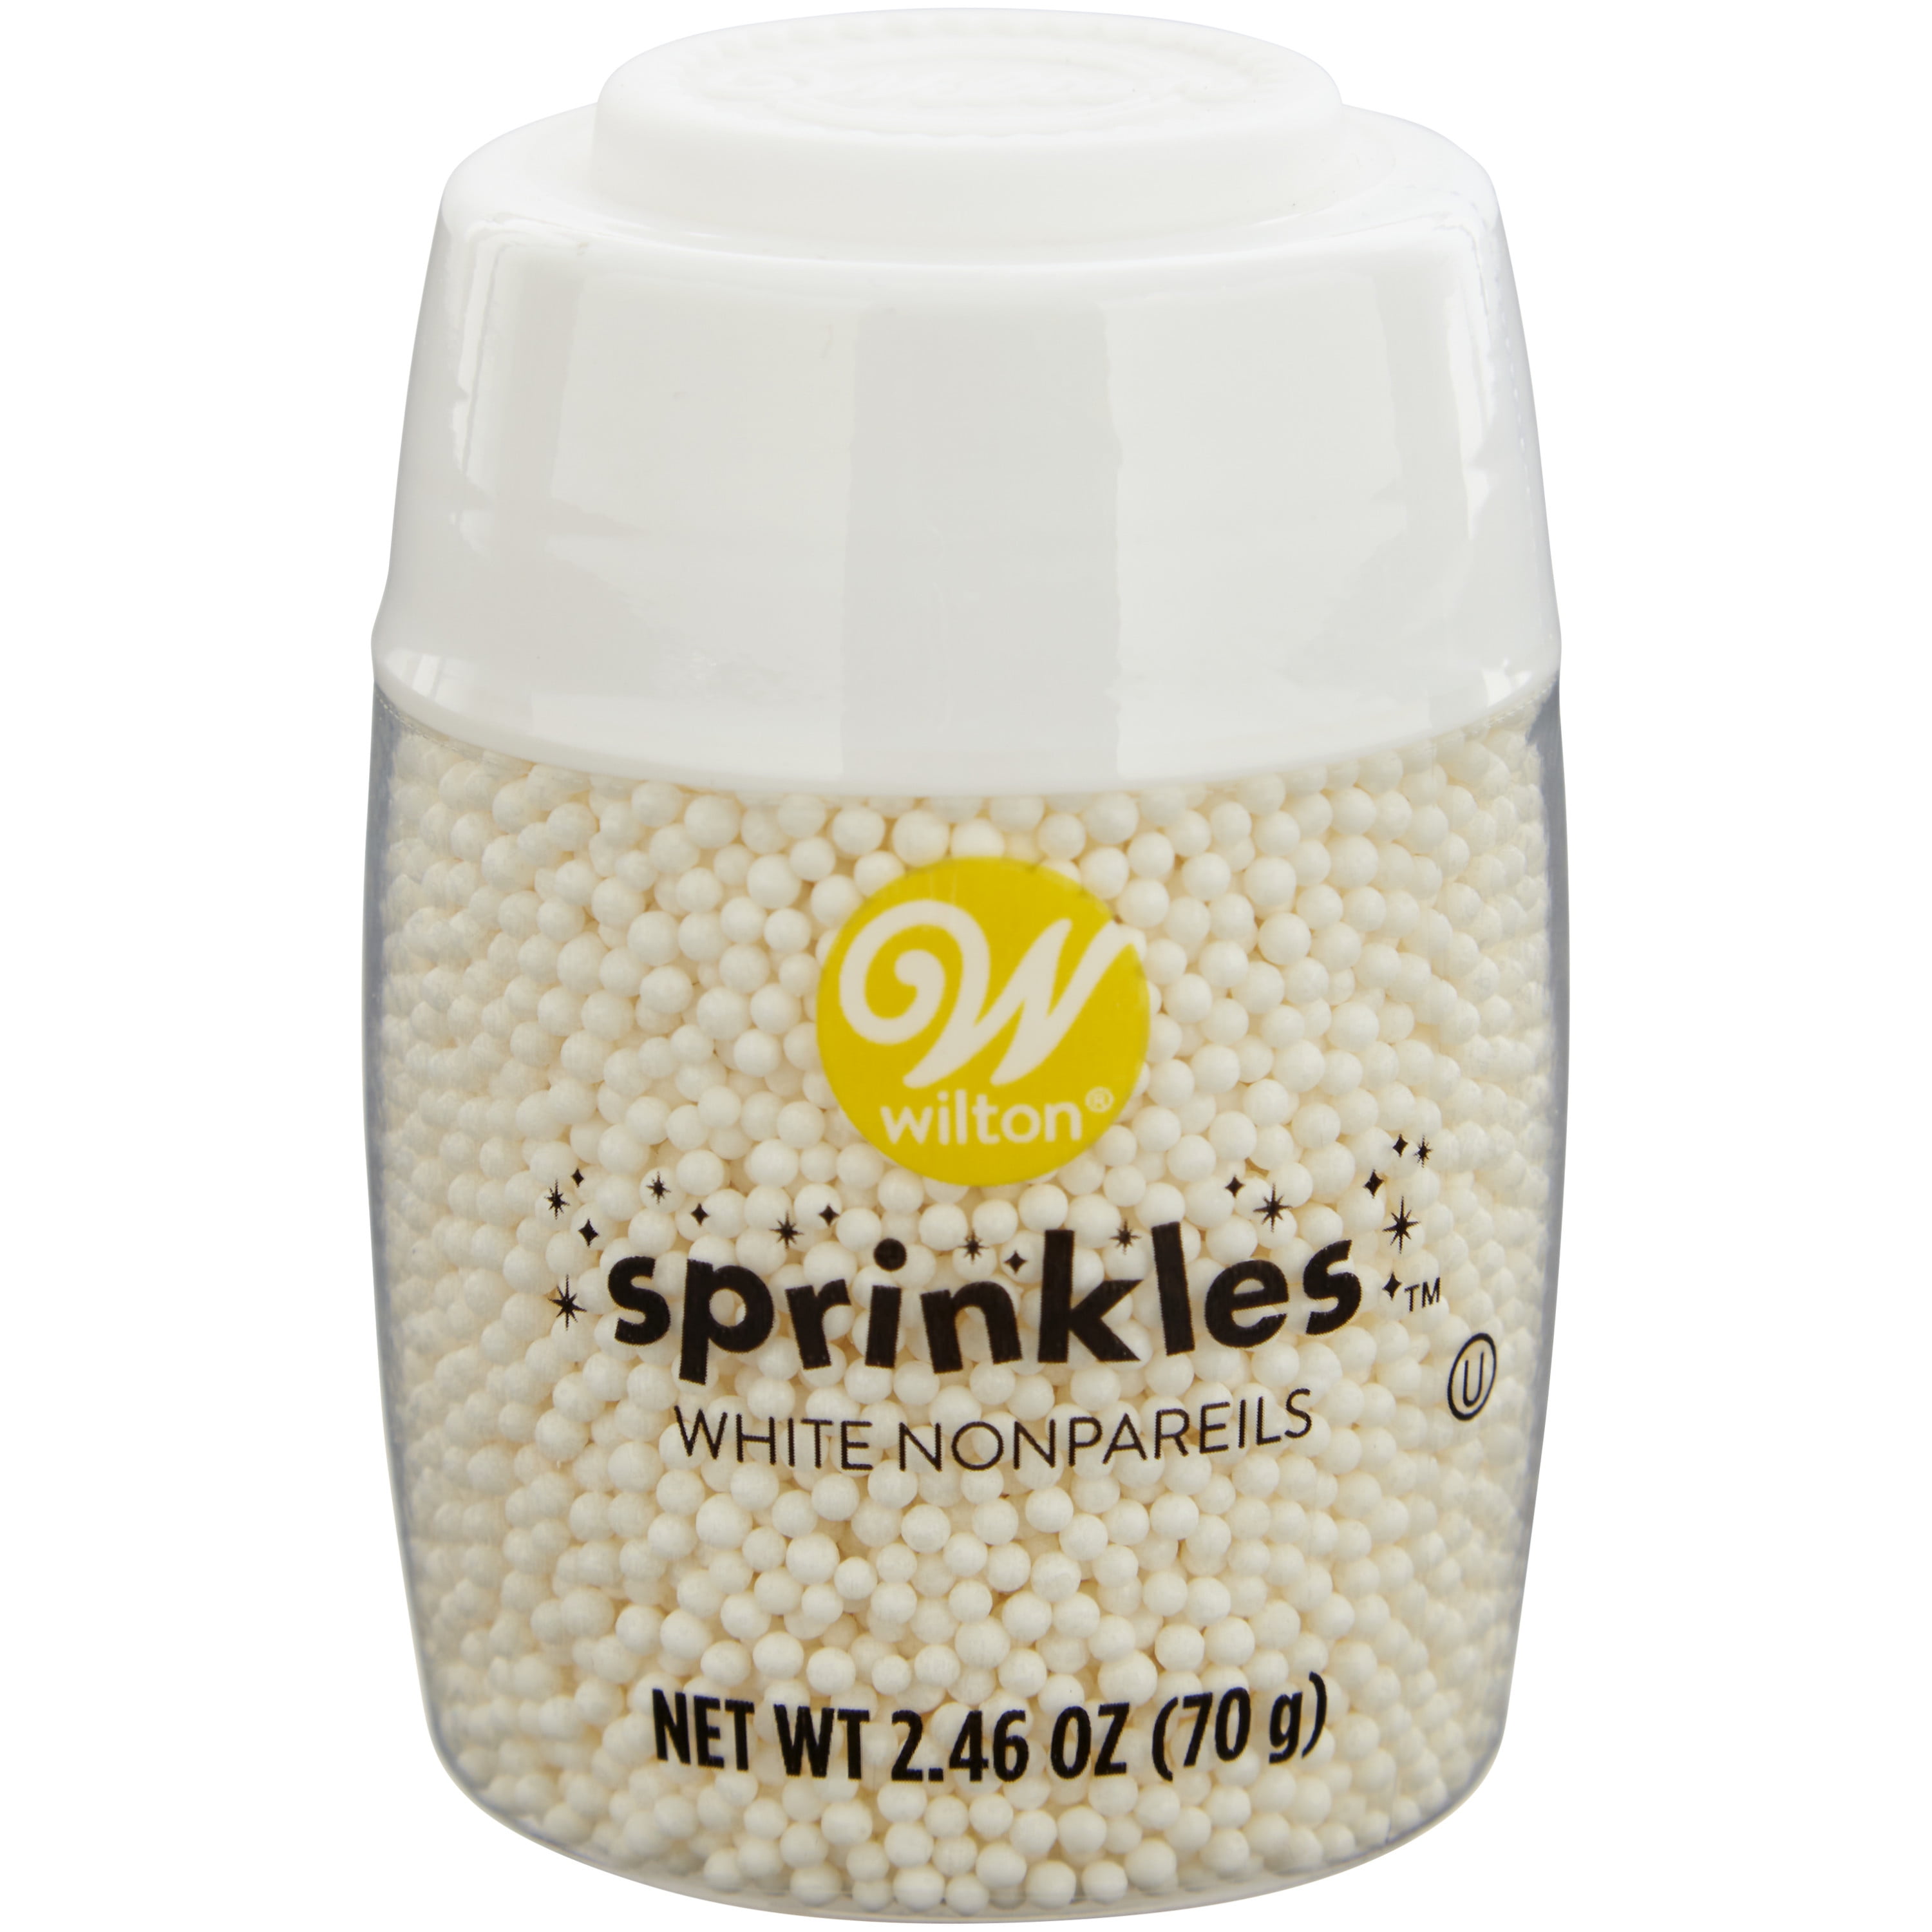 Wilton White Nonpareils Sprinkles, 2.46 oz.